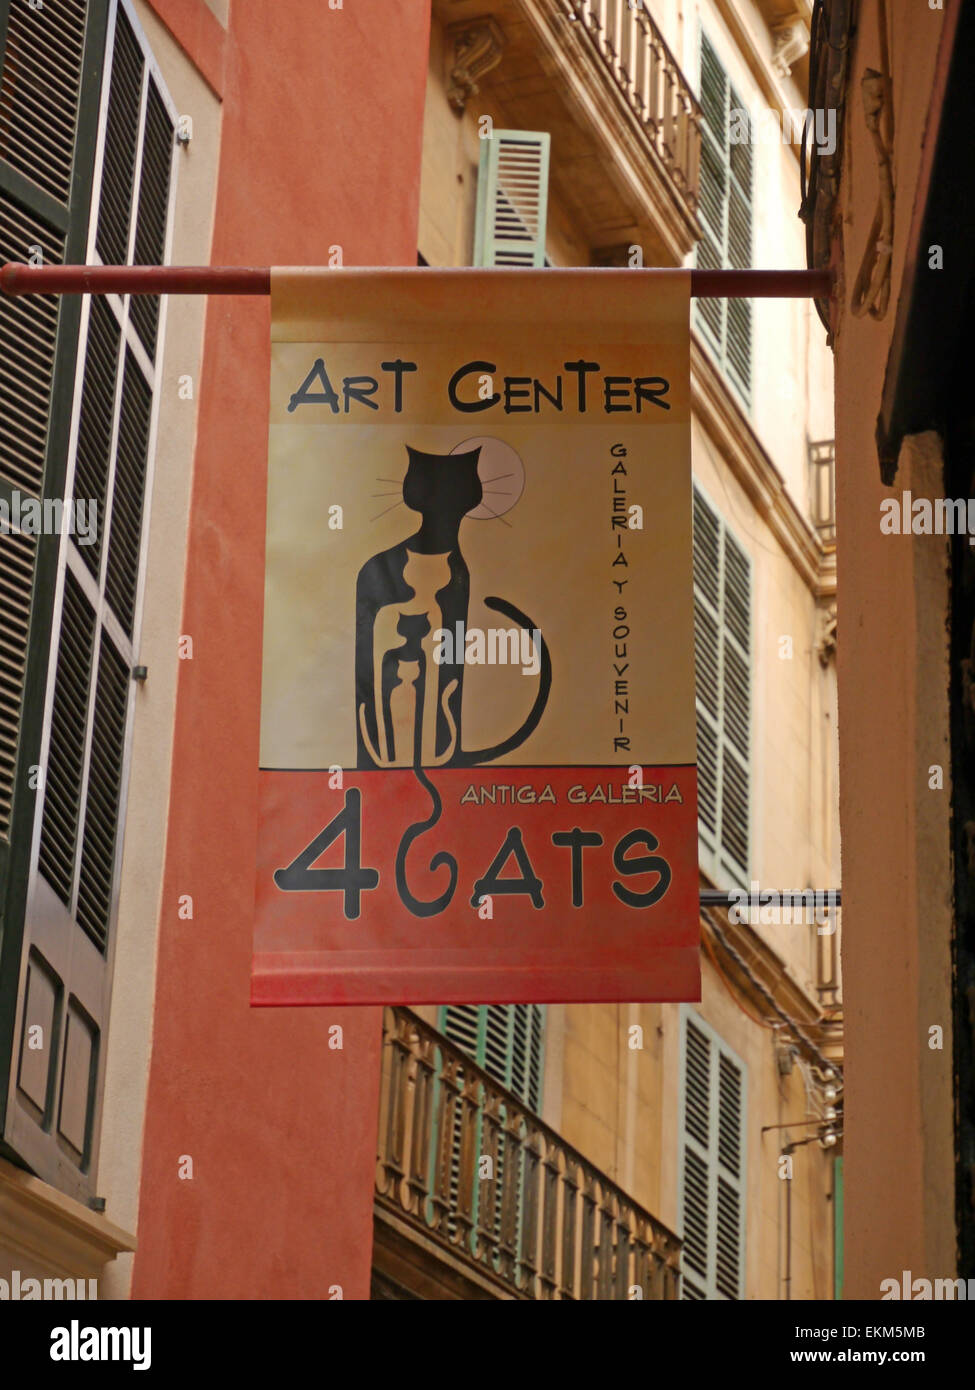 A banner sign for the 4 Cats Art Center in Palma de Mallorca Stock Photo